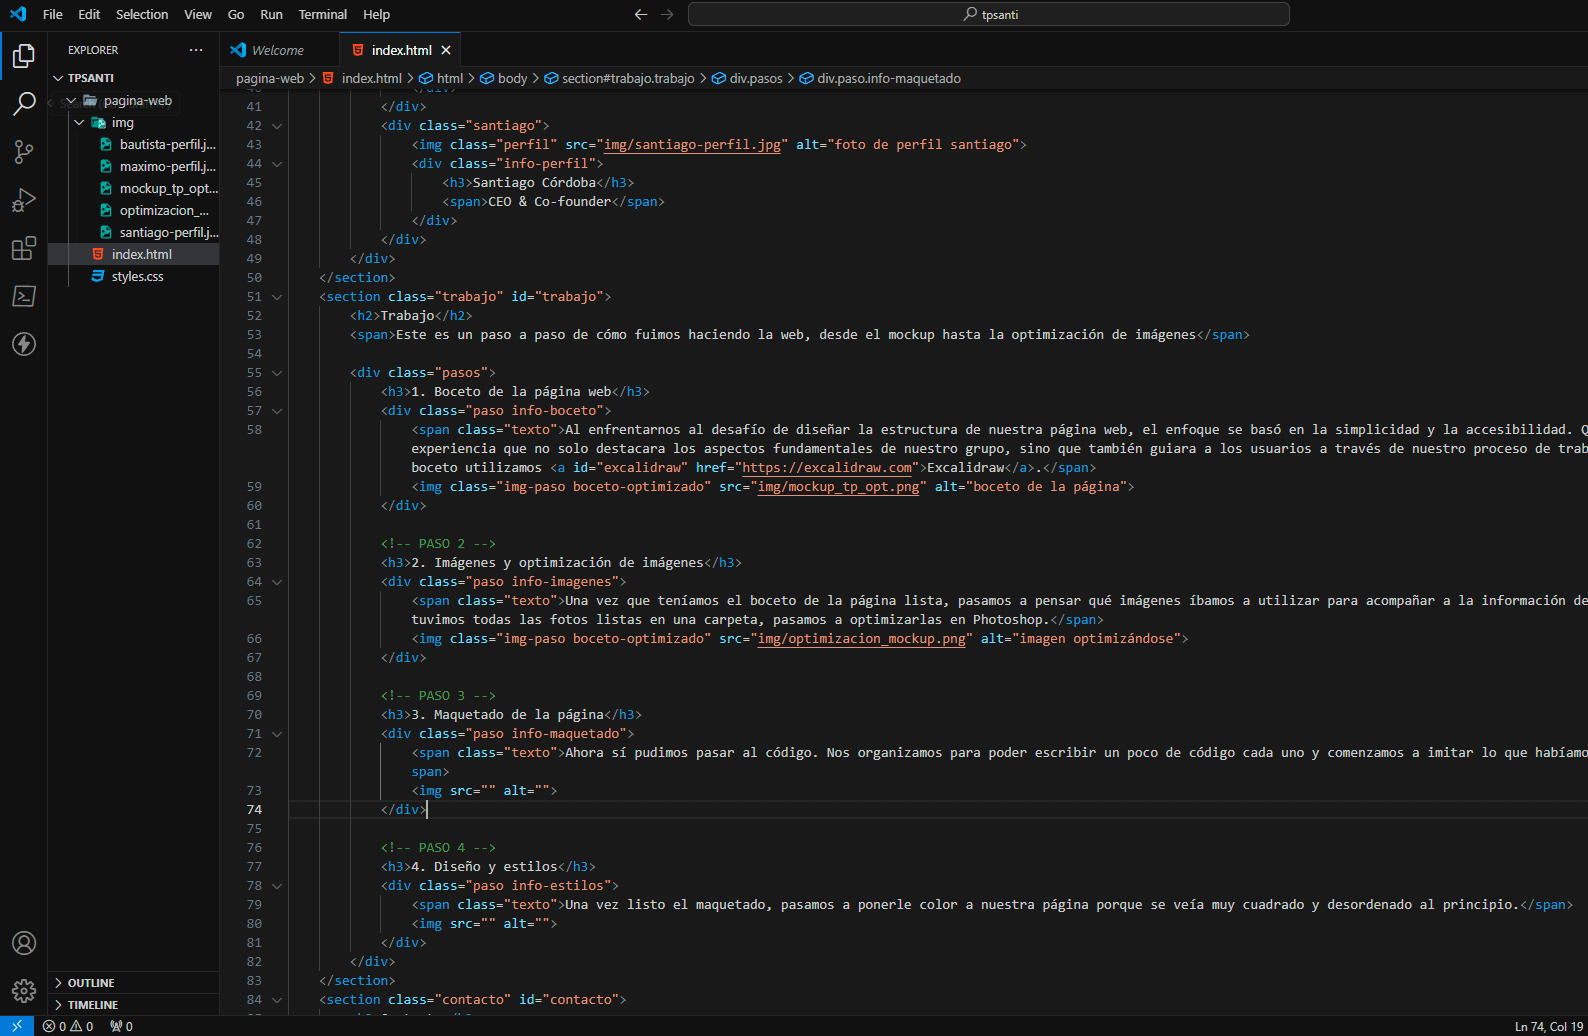 código html del proyecto